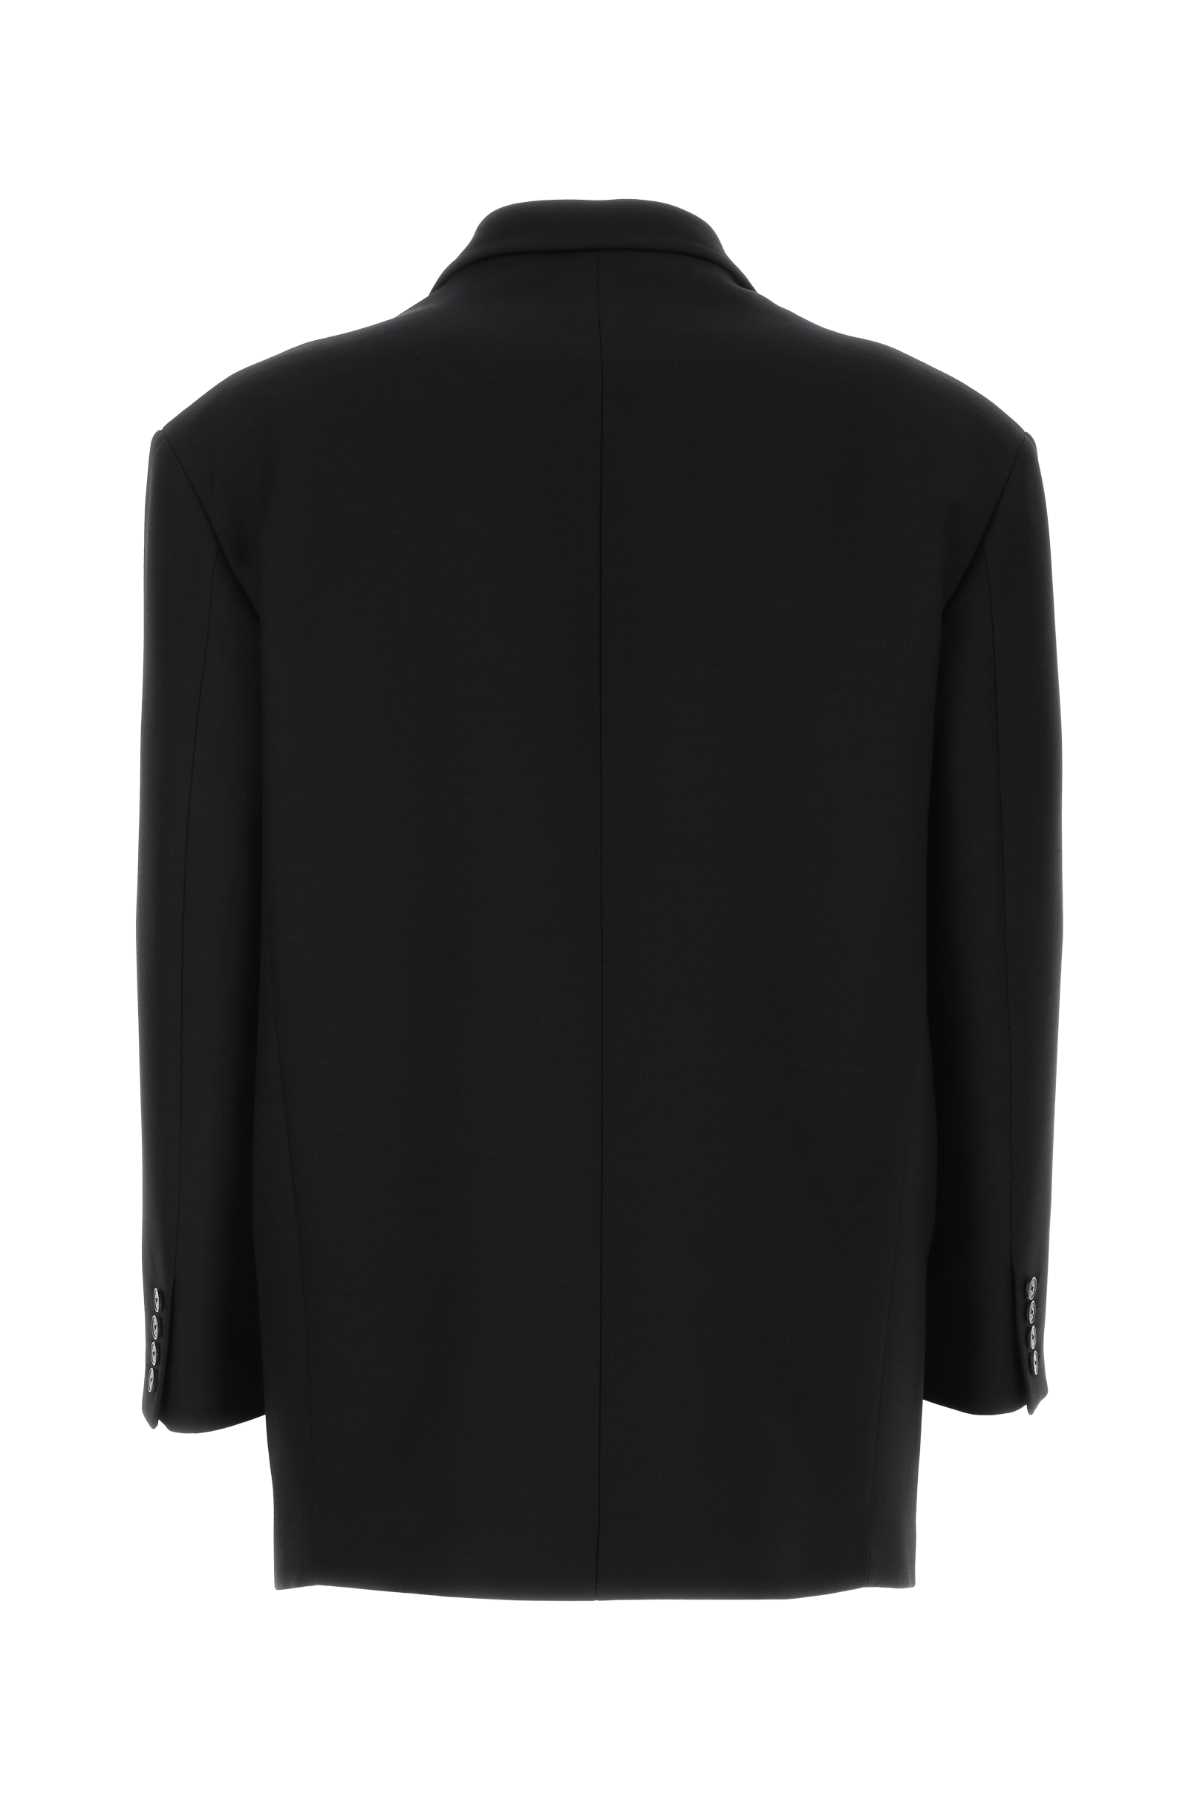 Valentino Black Wool Blend Blazer In 0no